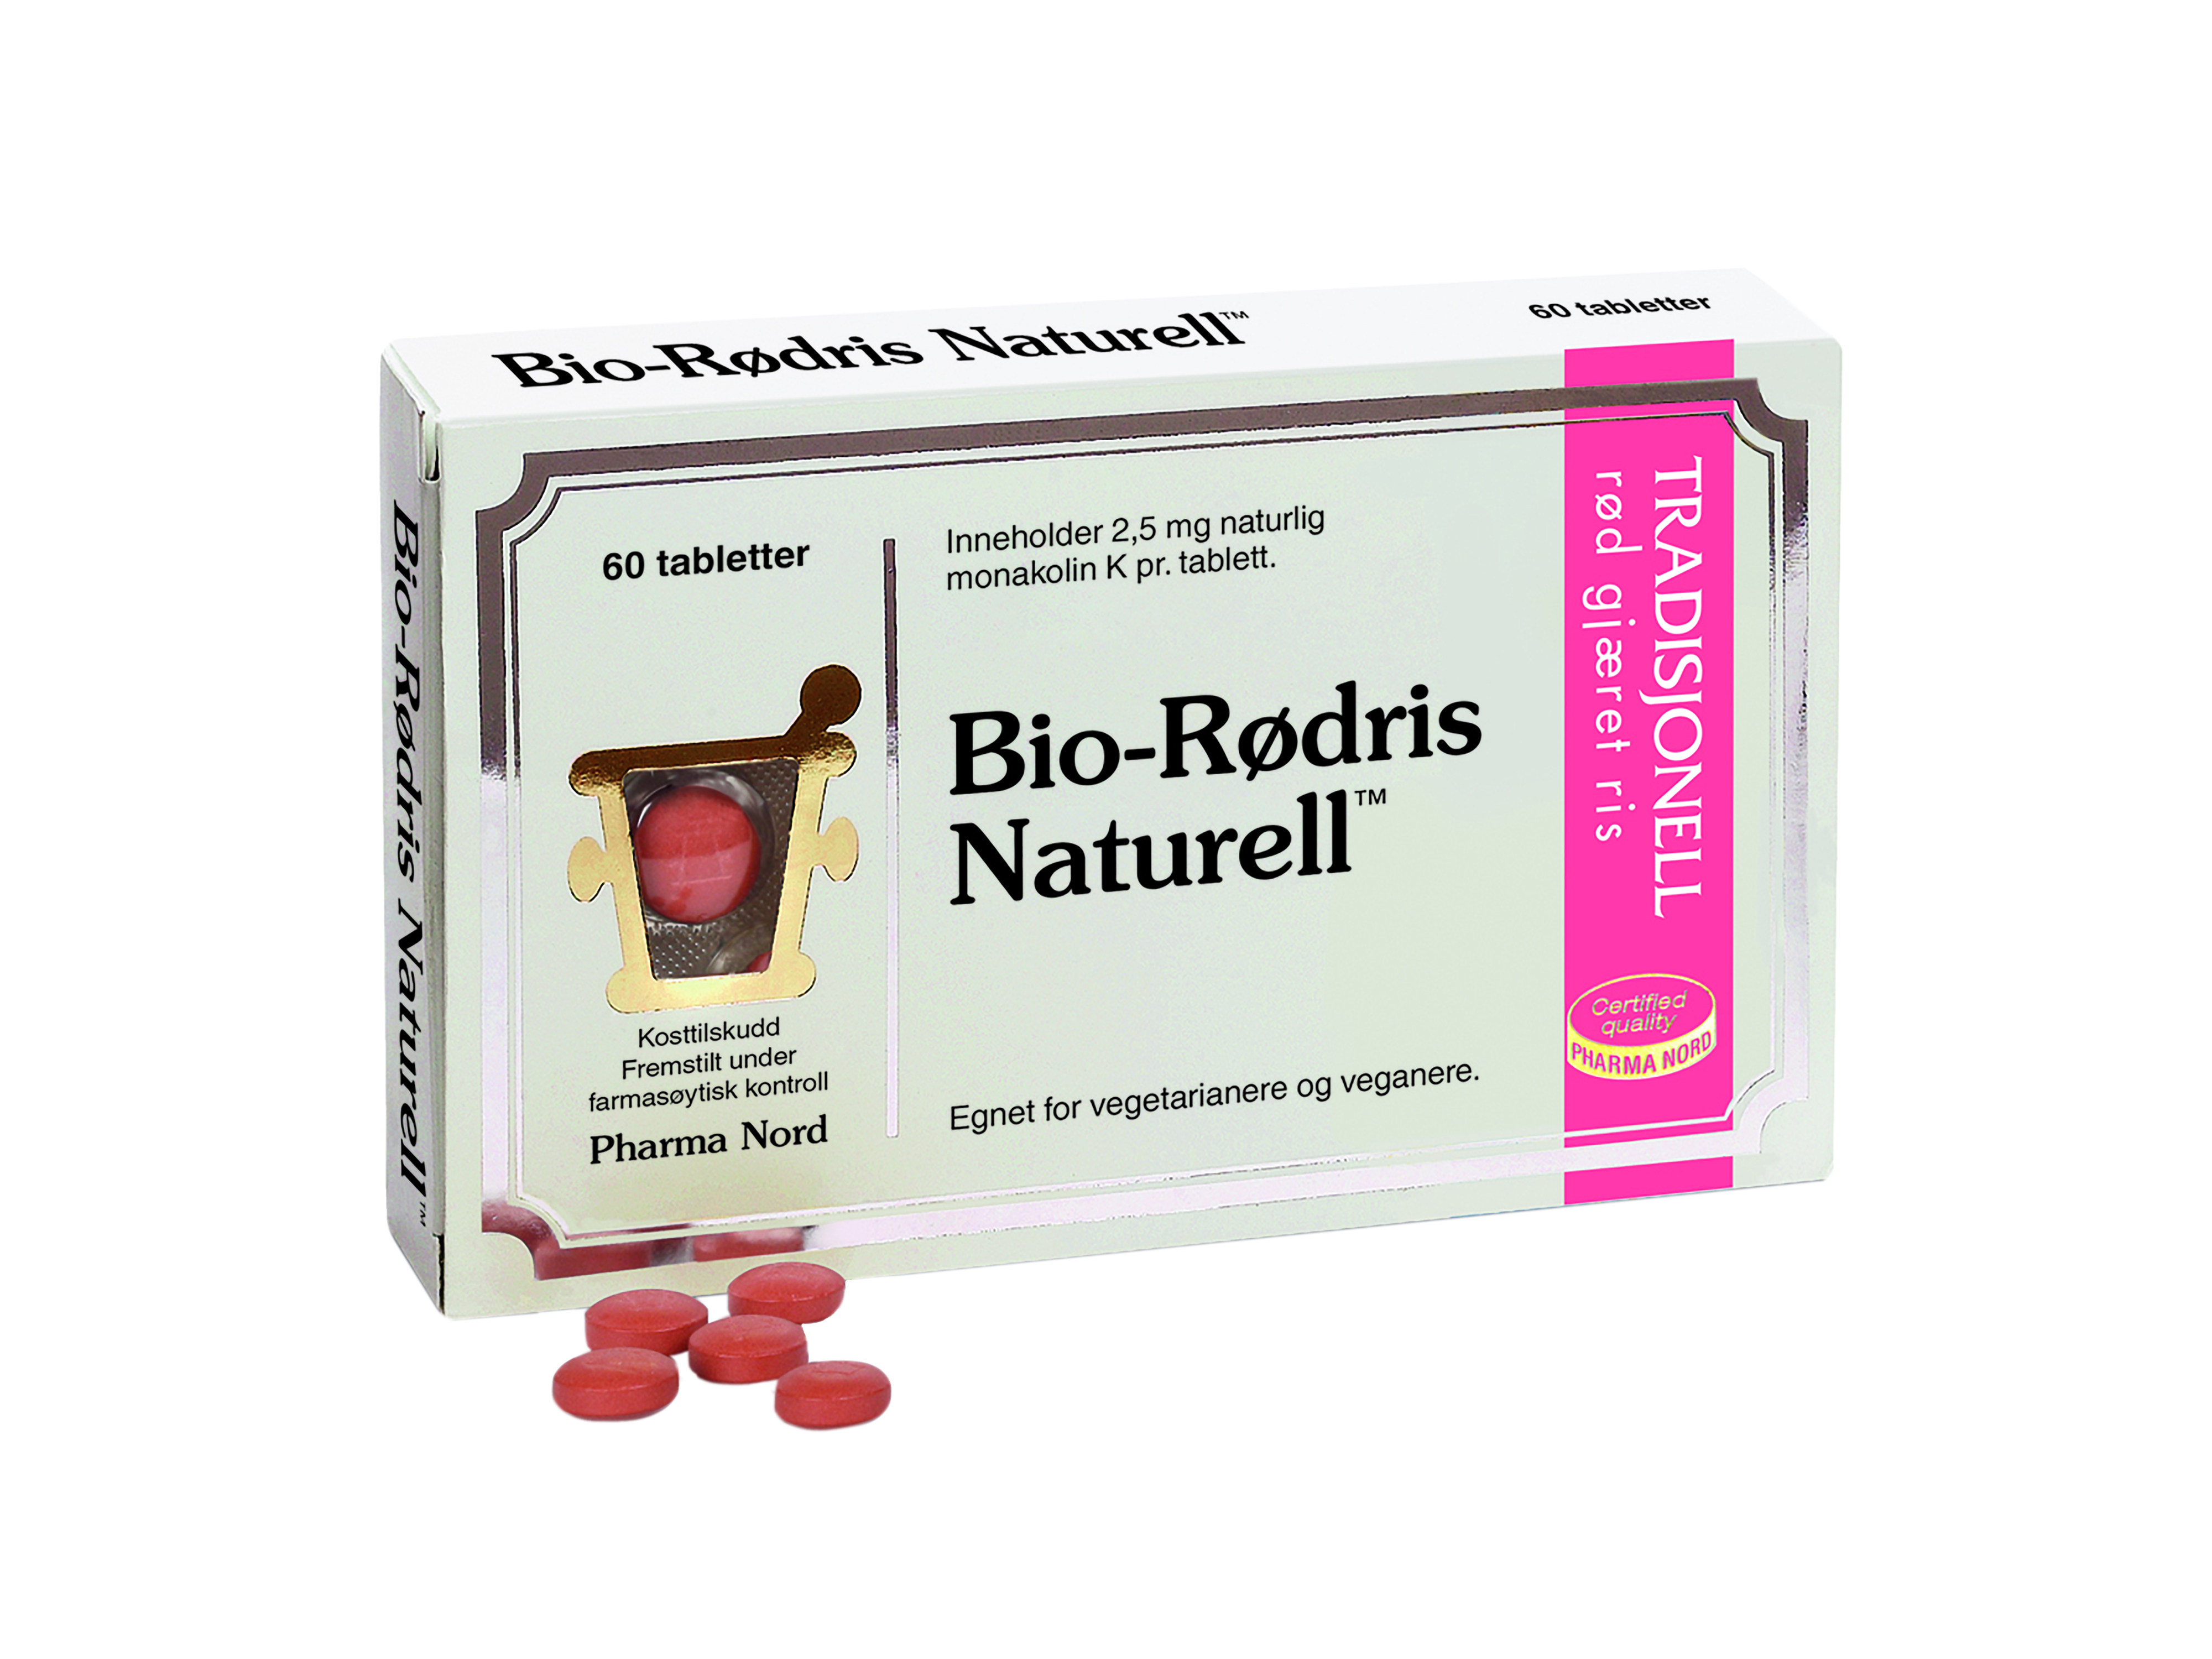 Pharma Nord Bio-Rødris Naturell, 60 tabletter